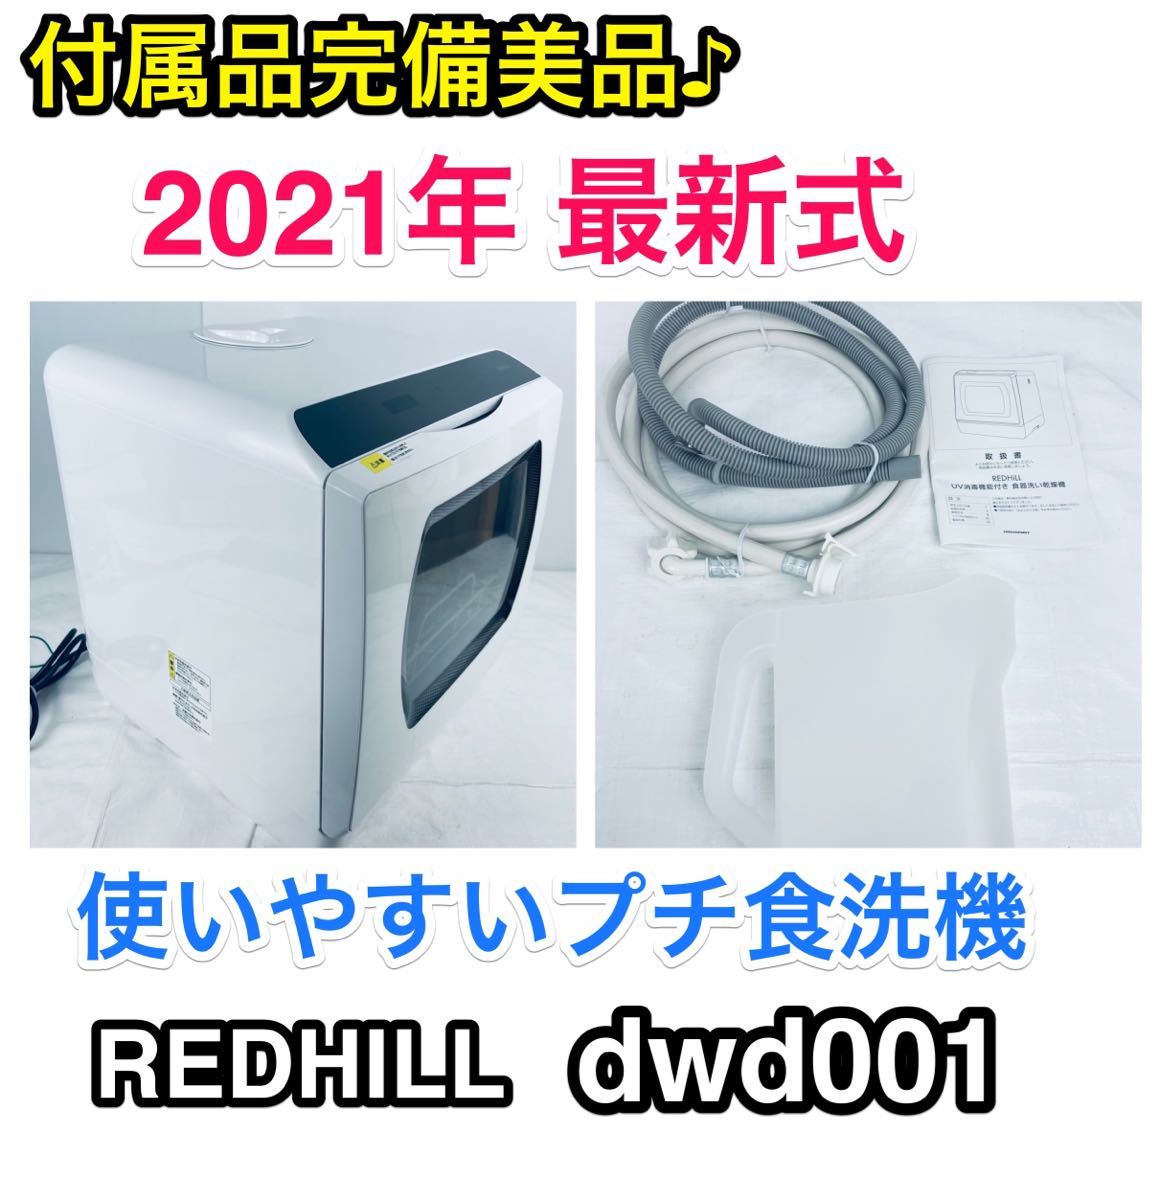 美品 ホビナビ UV除菌 食器洗い乾燥機 工事不要 タンク式 dwd001